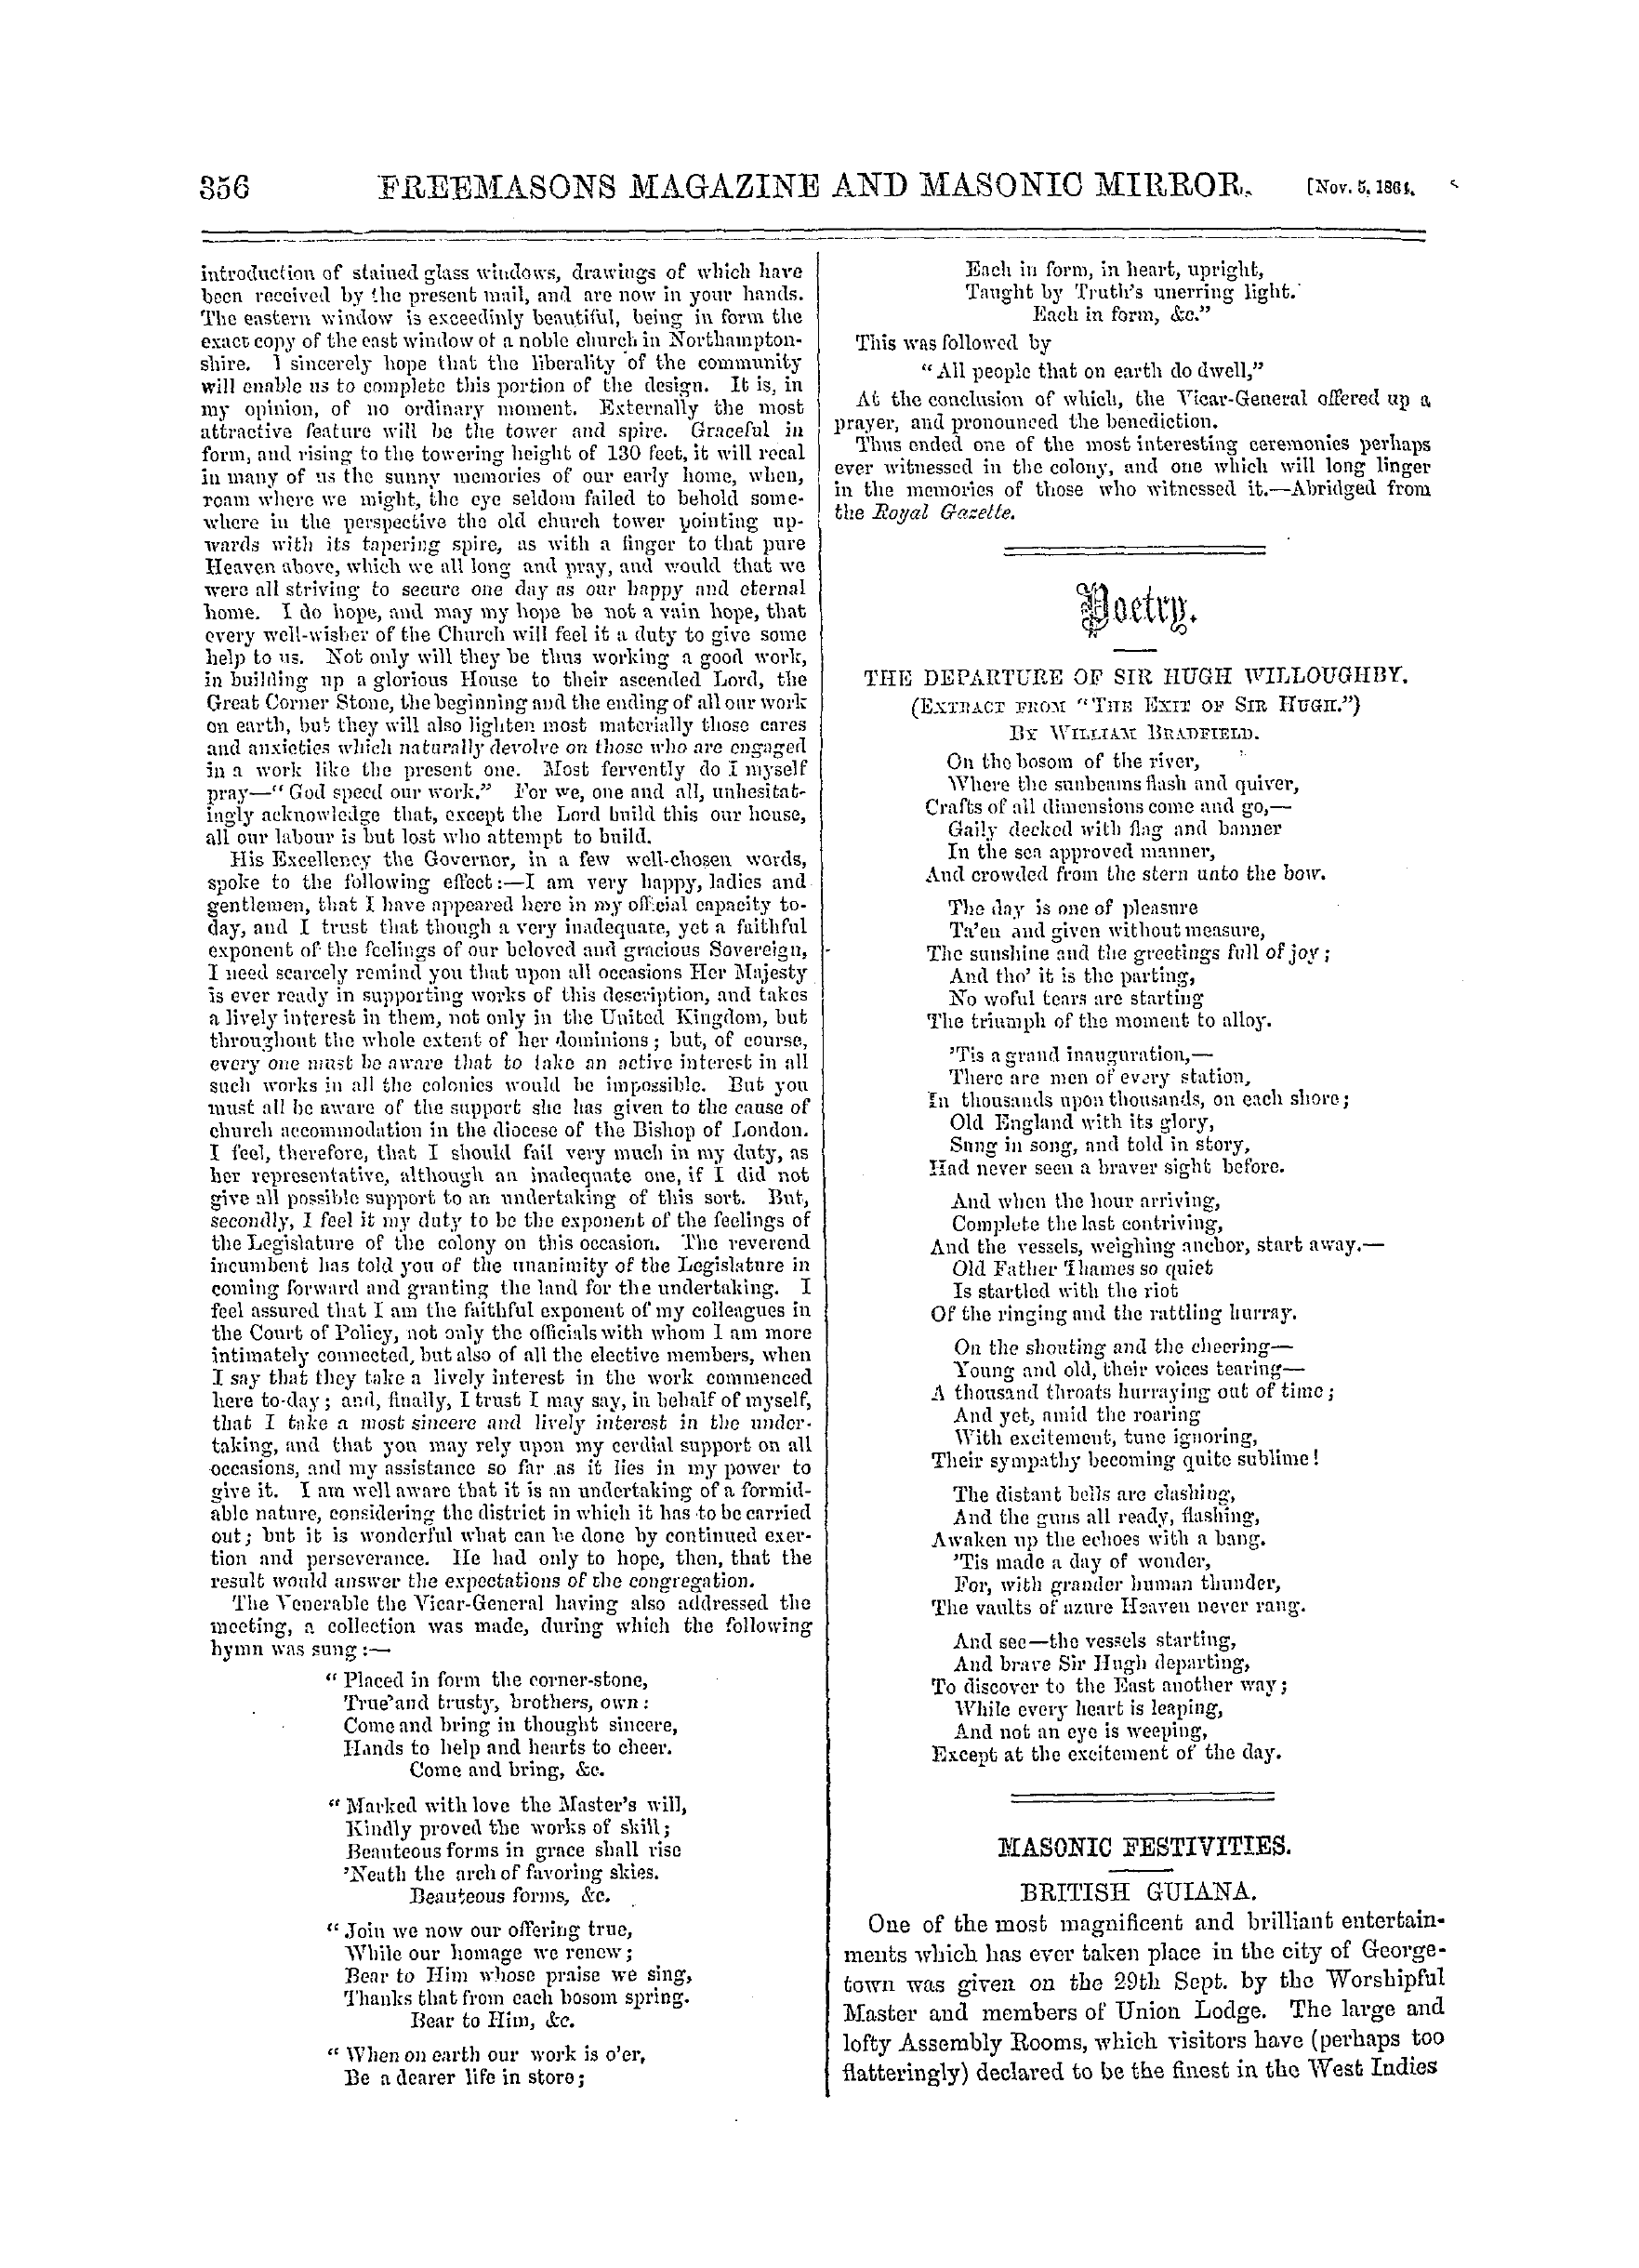 The Freemasons' Monthly Magazine: 1864-11-05: 16